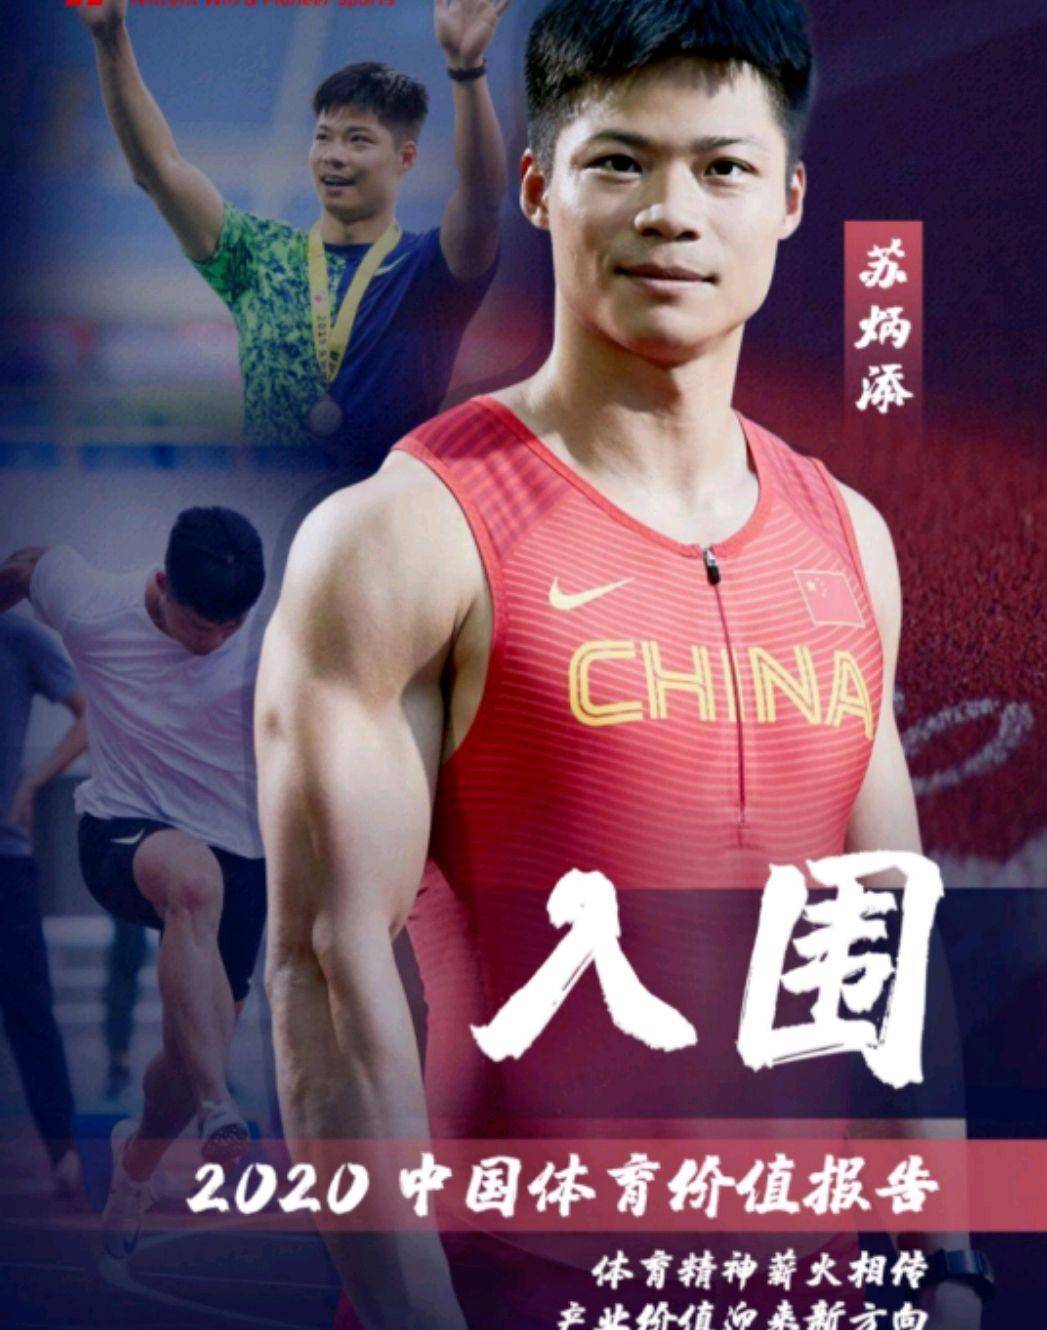 苏炳添获中国运动员影响力榜第8名!坦言:东京奥运会将